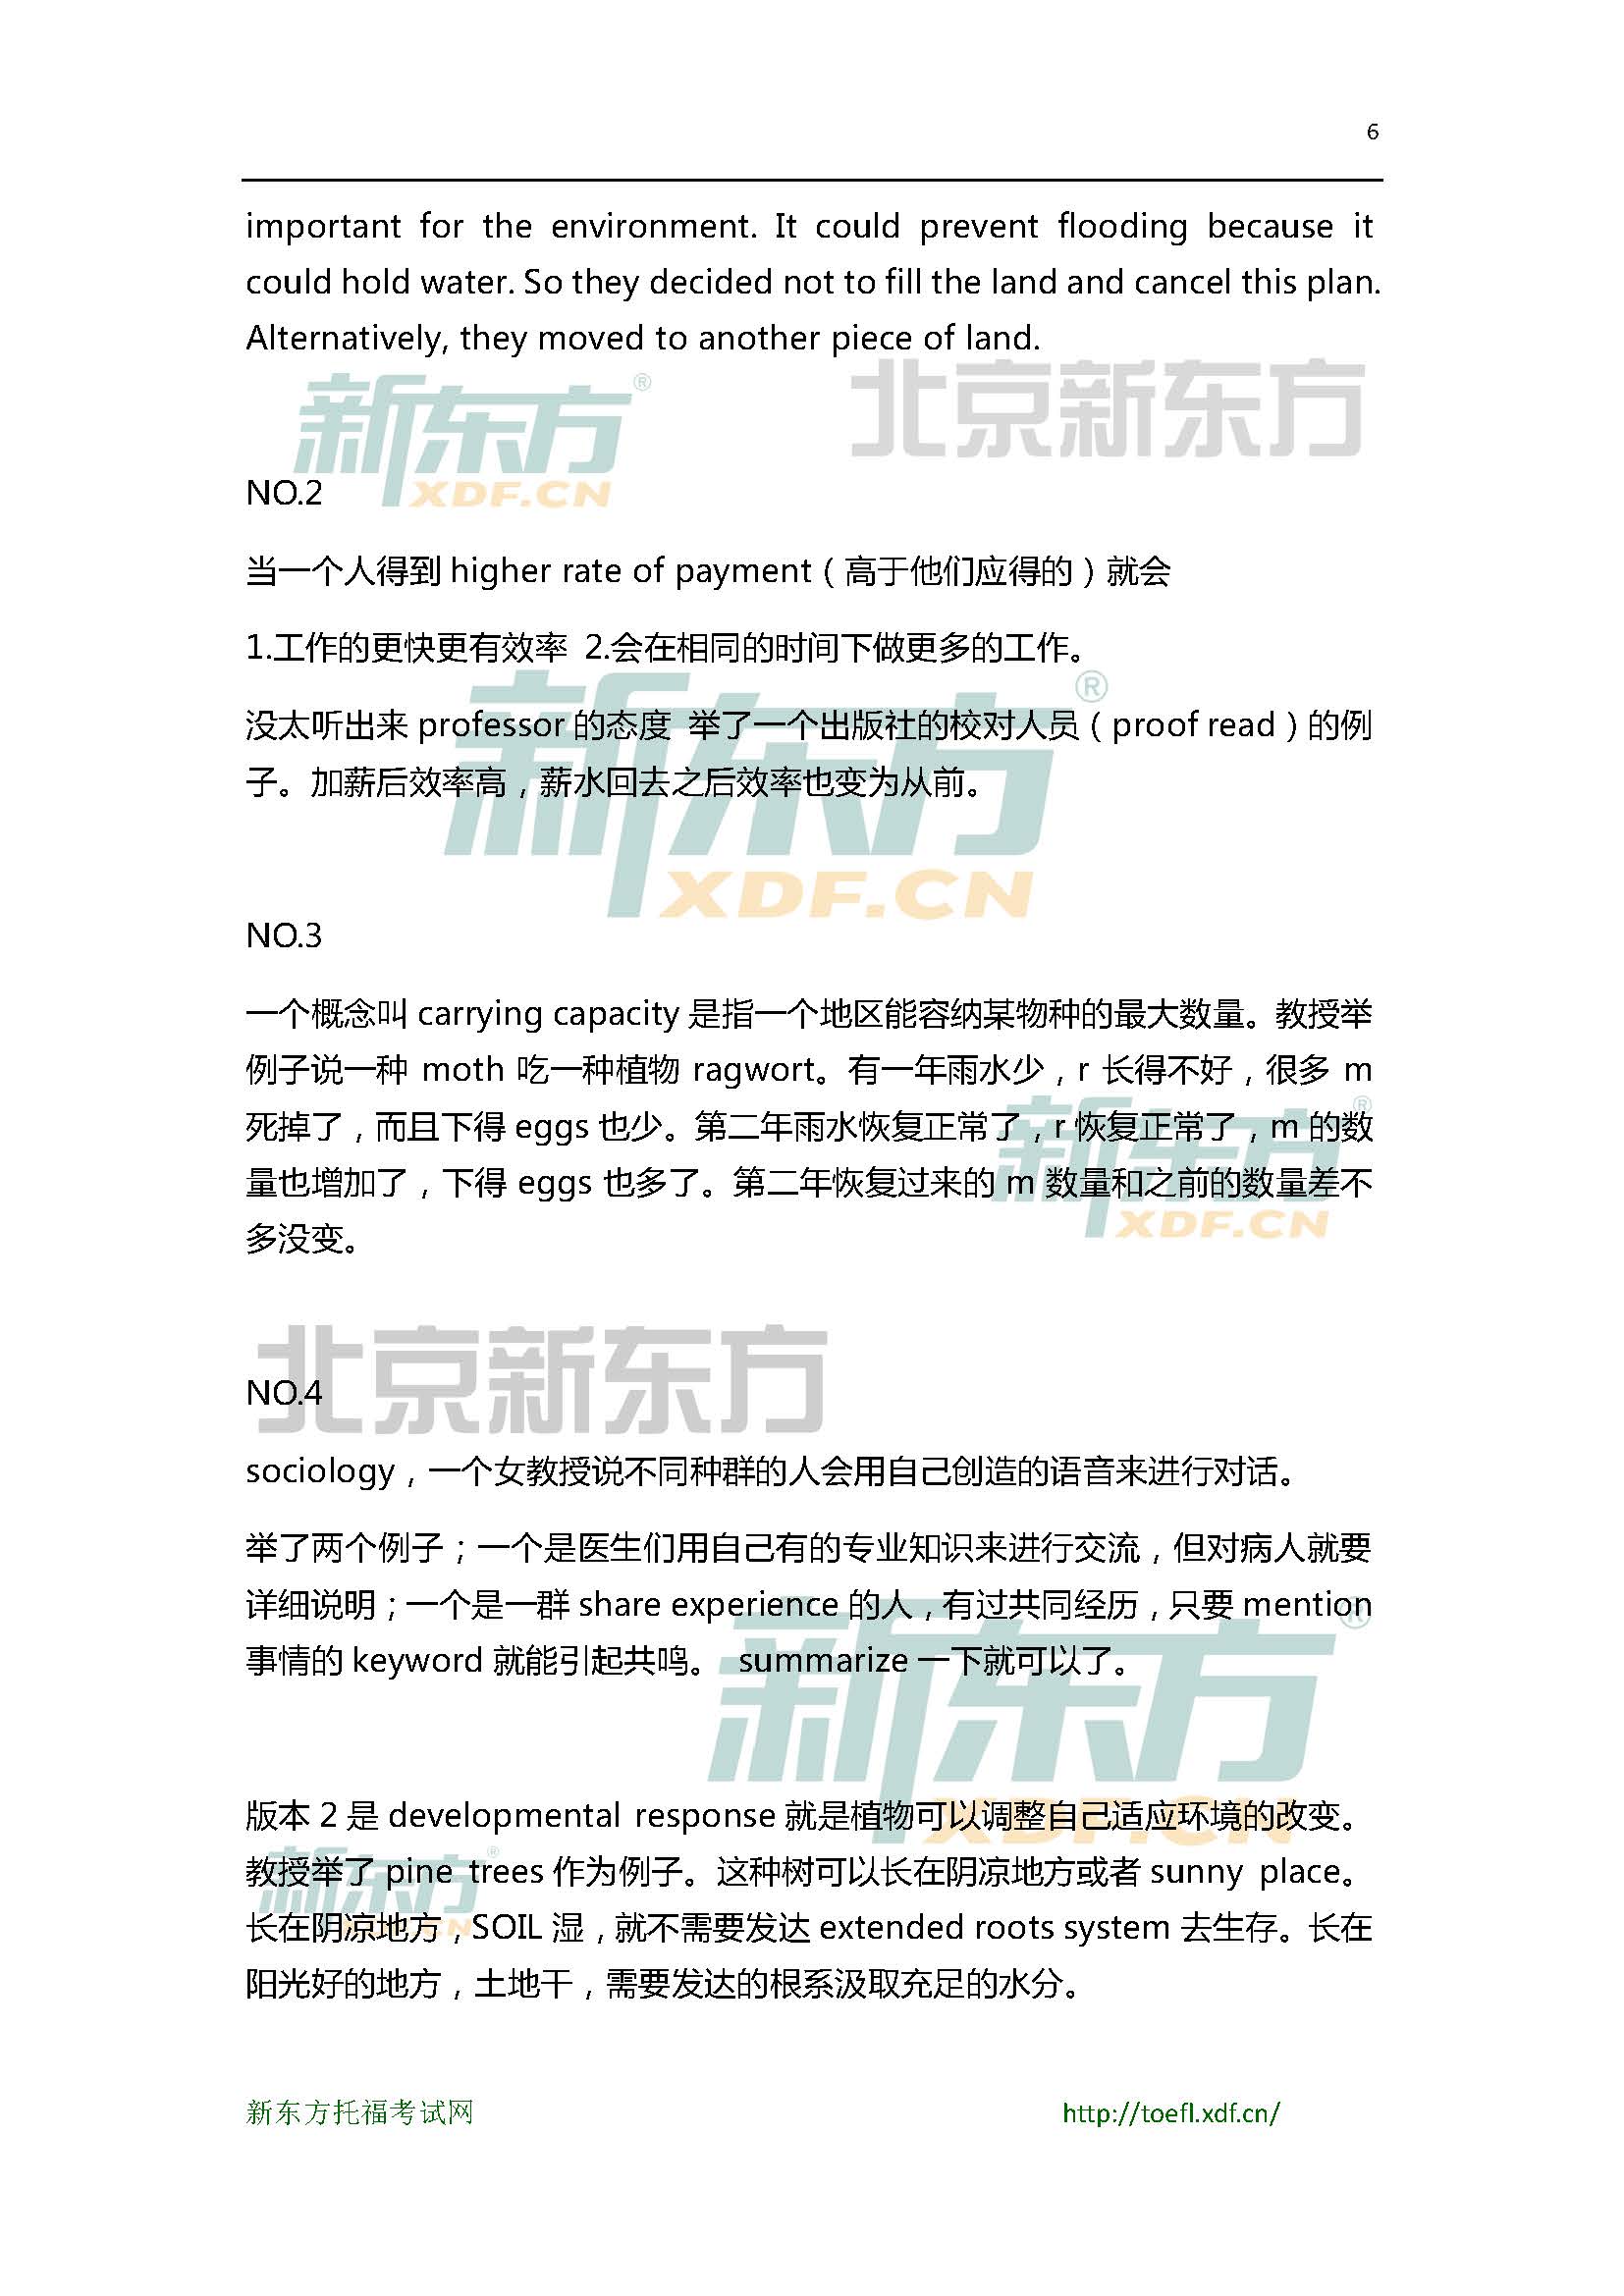 2015年6月27日托福口语超级小范围预测(6套题)